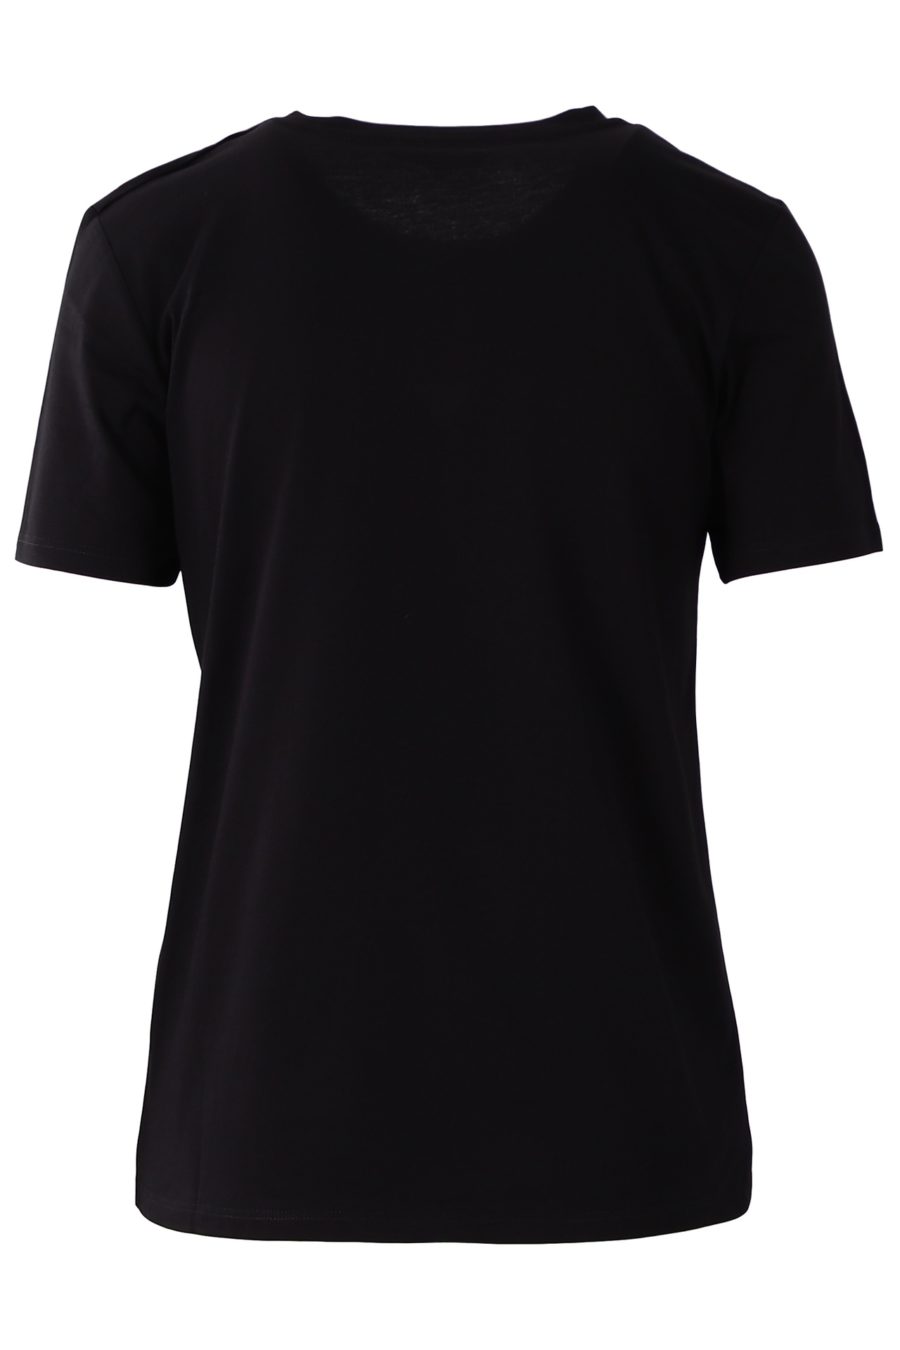 T-shirt Balmain preta com botões e logótipo em veludo - 619c7fa650886fcb99c2f969110ce7b676649819